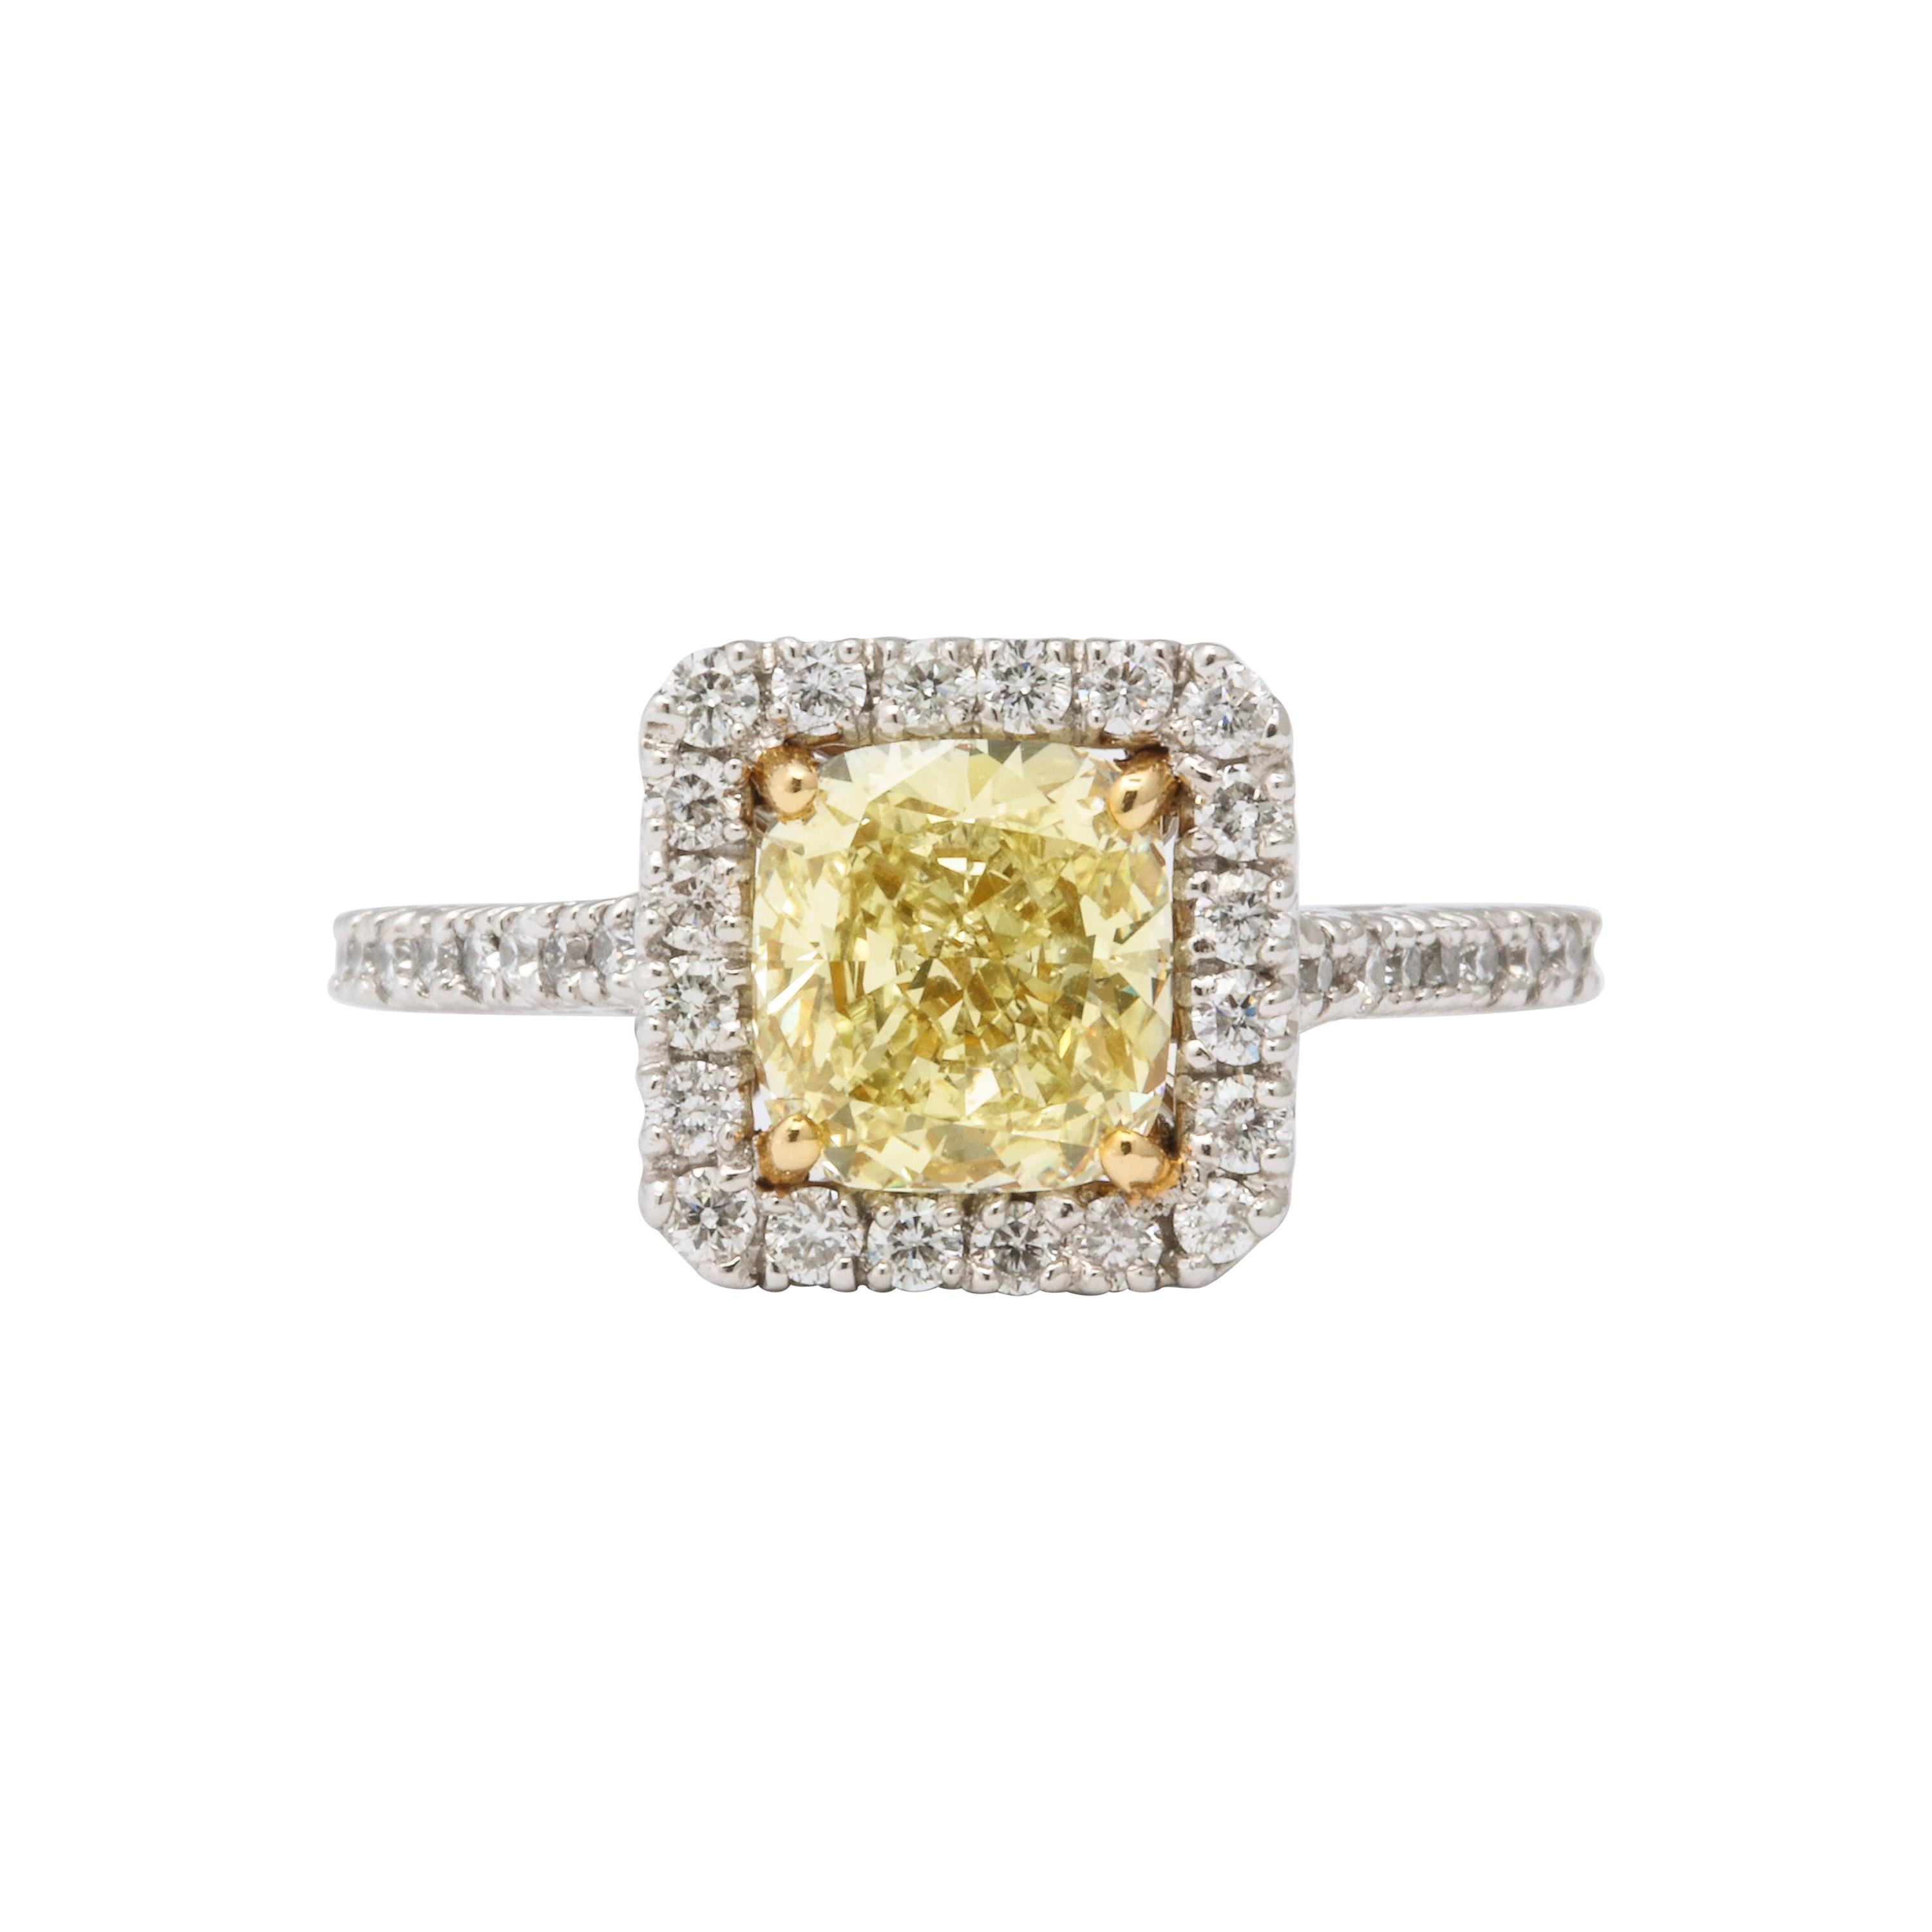 GIA-zertifizierter Verlobungsring mit 1,71 Karat gelbem Diamant